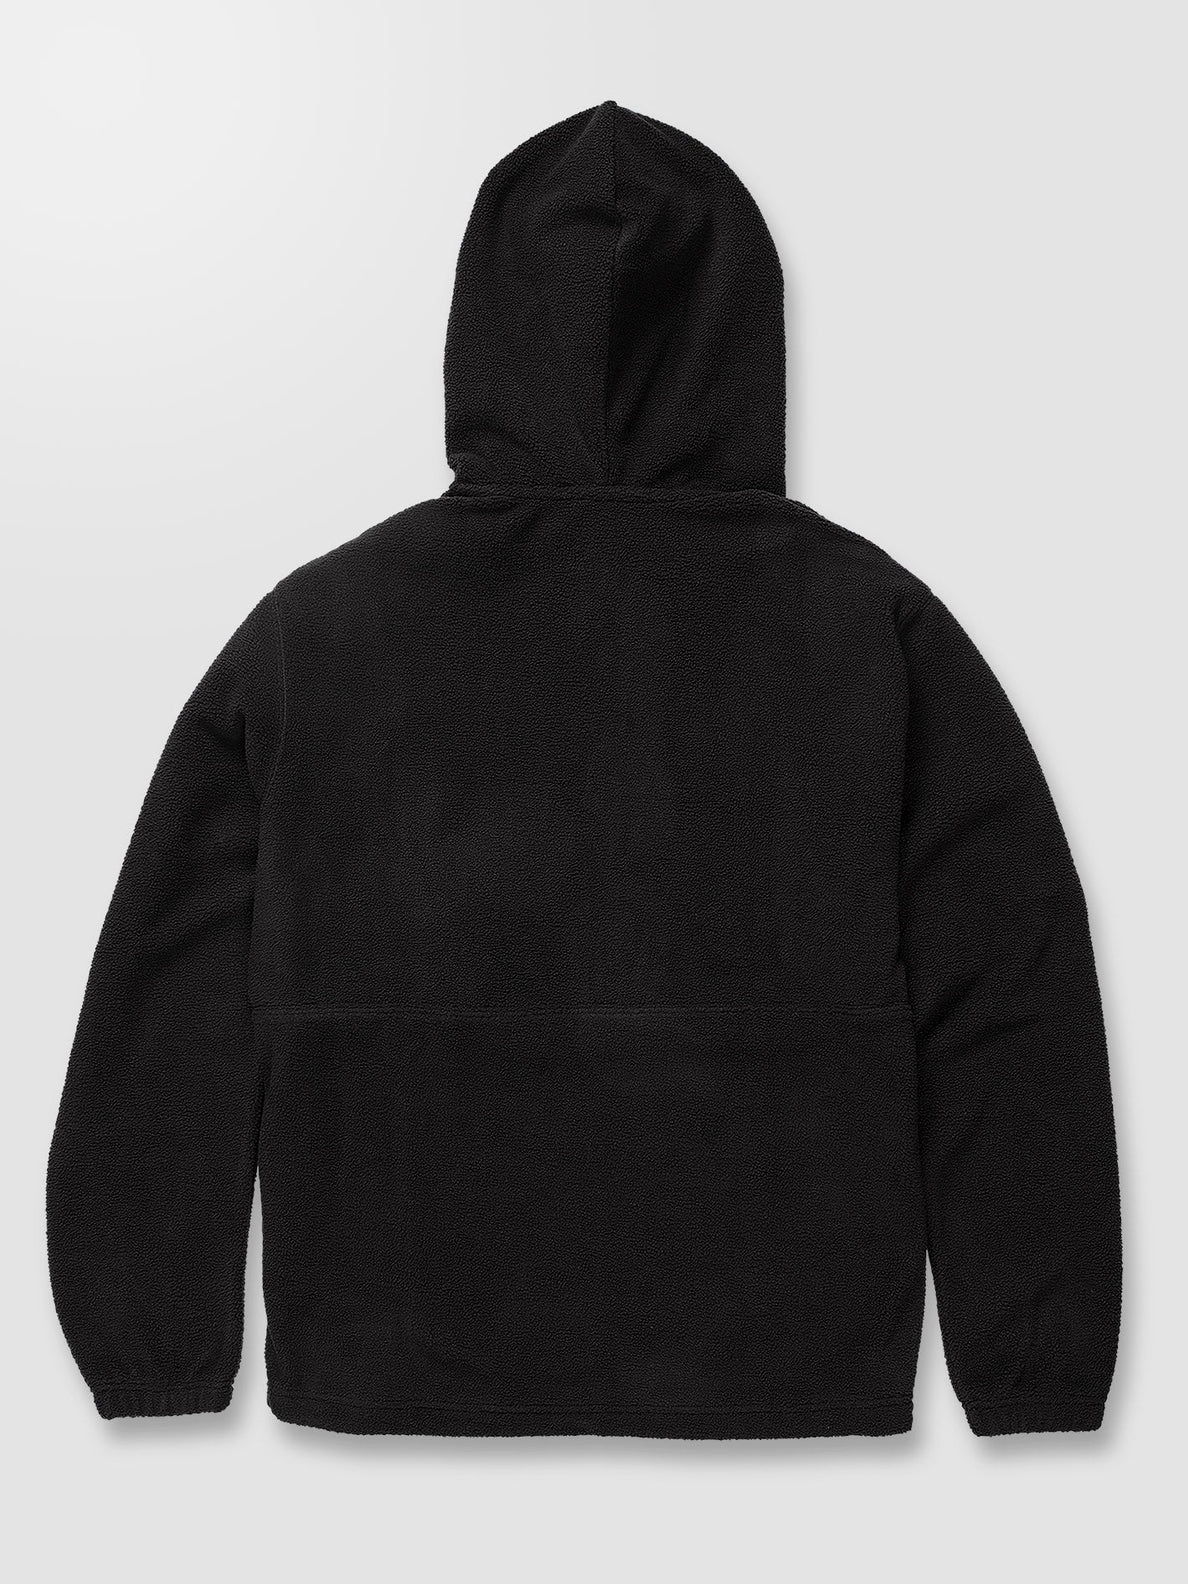 Unerstand Half Zip Sweatshirt - BLACK (A4832200_BLK) [11]